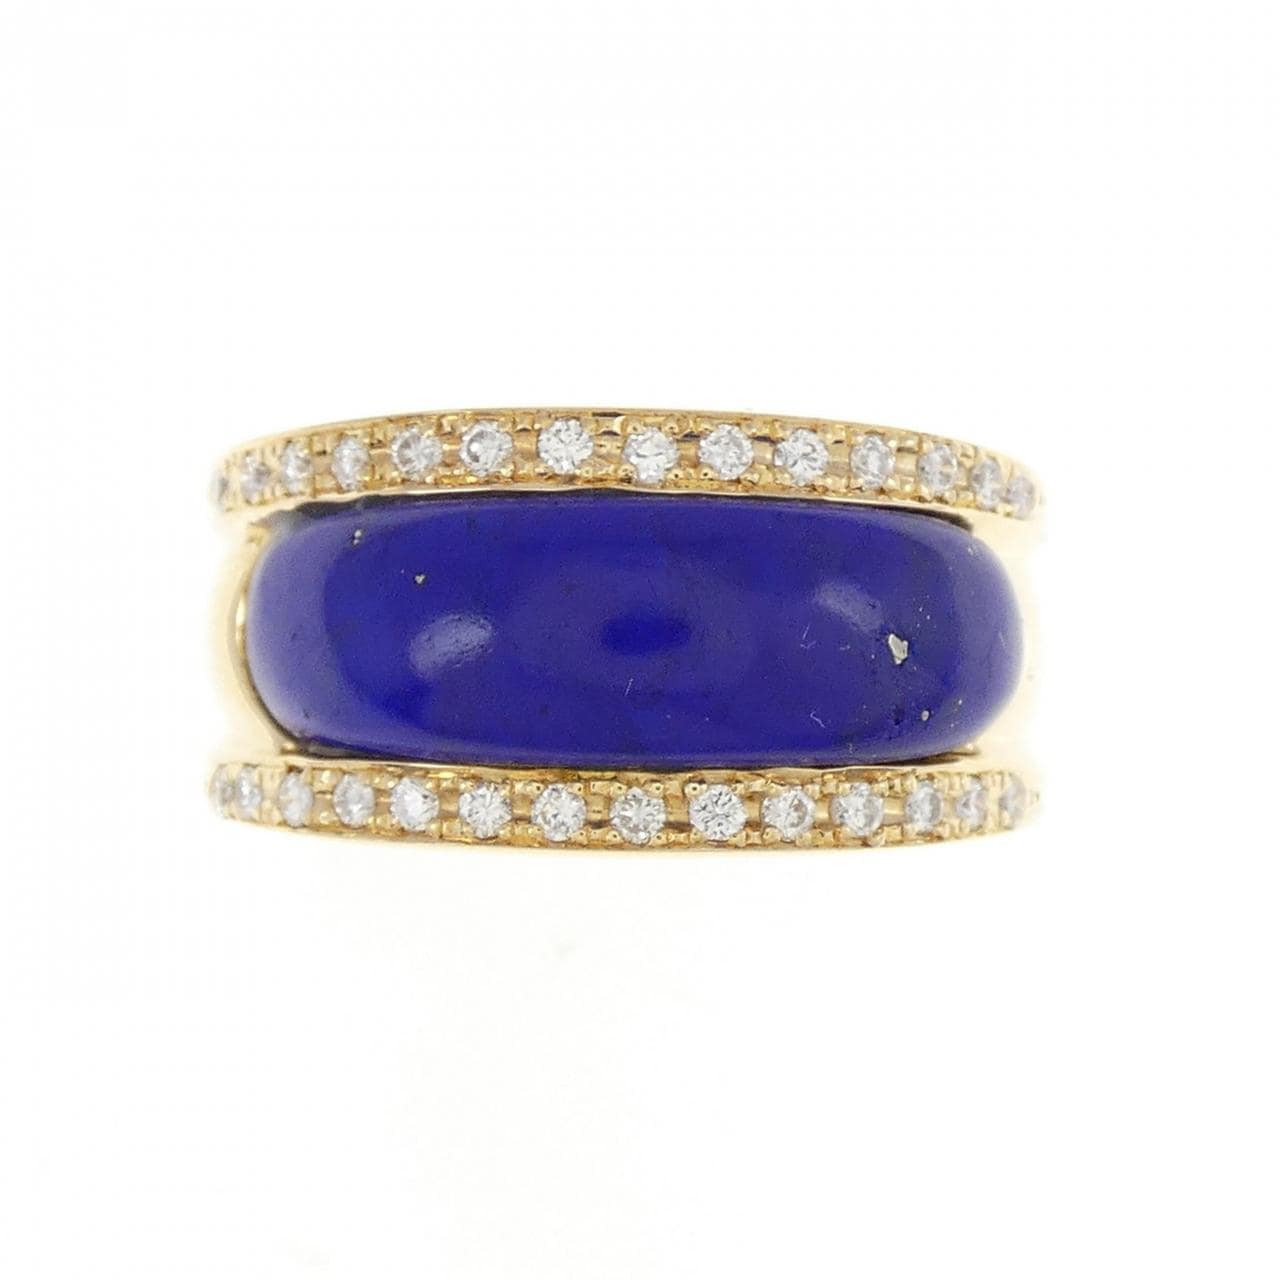 K18YG lapis lazuli ring